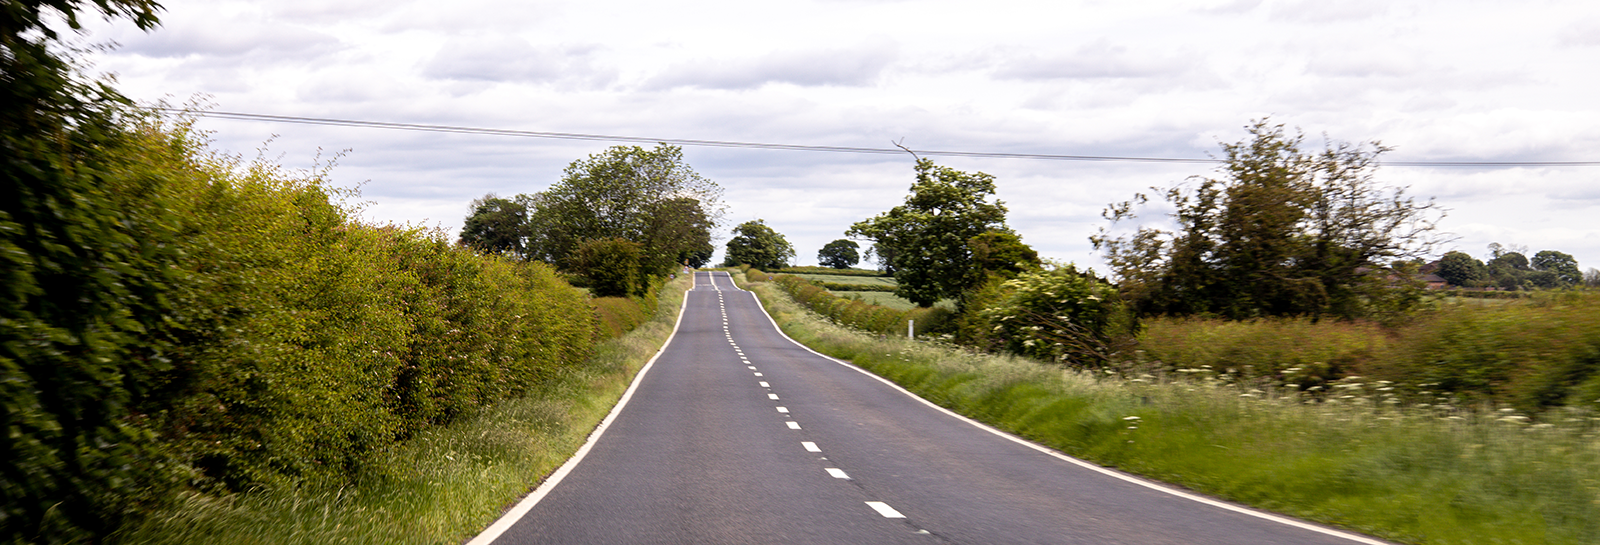 UK road banner image